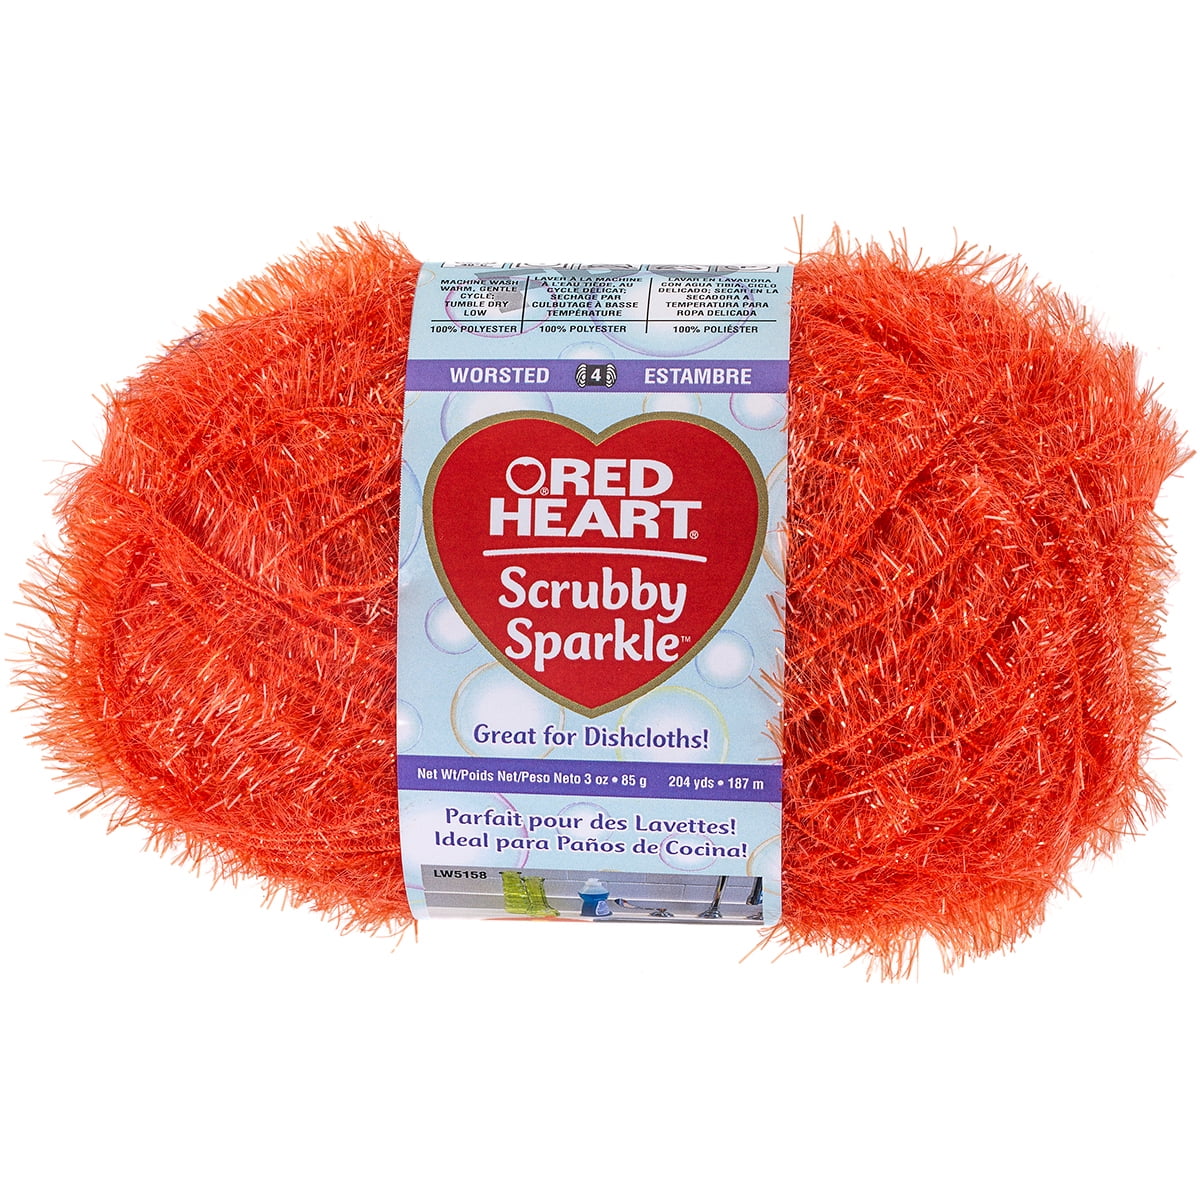 Multipack of 03 - Red Heart Scrubby Yarn-Zesty